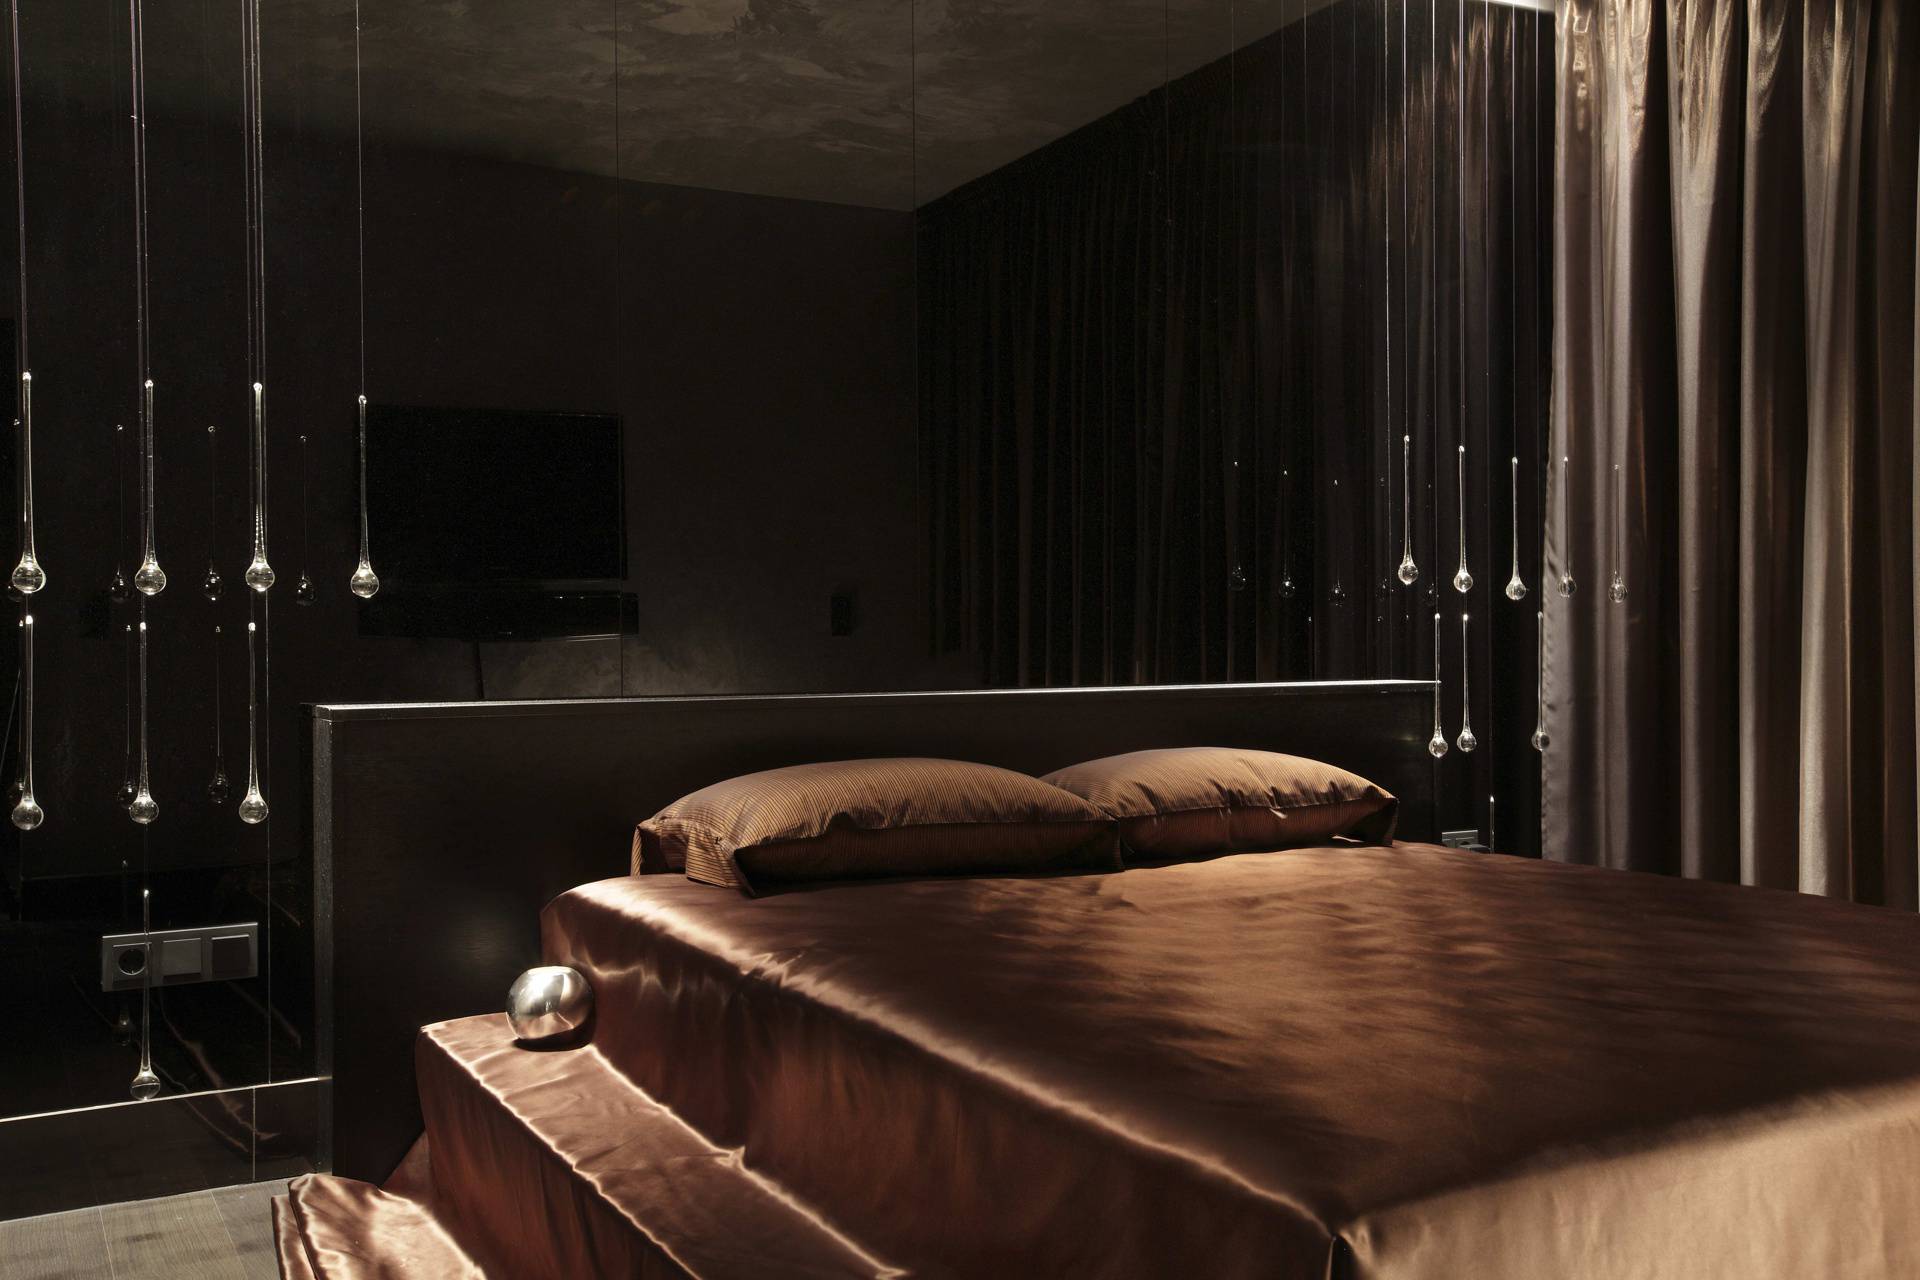 Дизайн спальни с темной мебелью